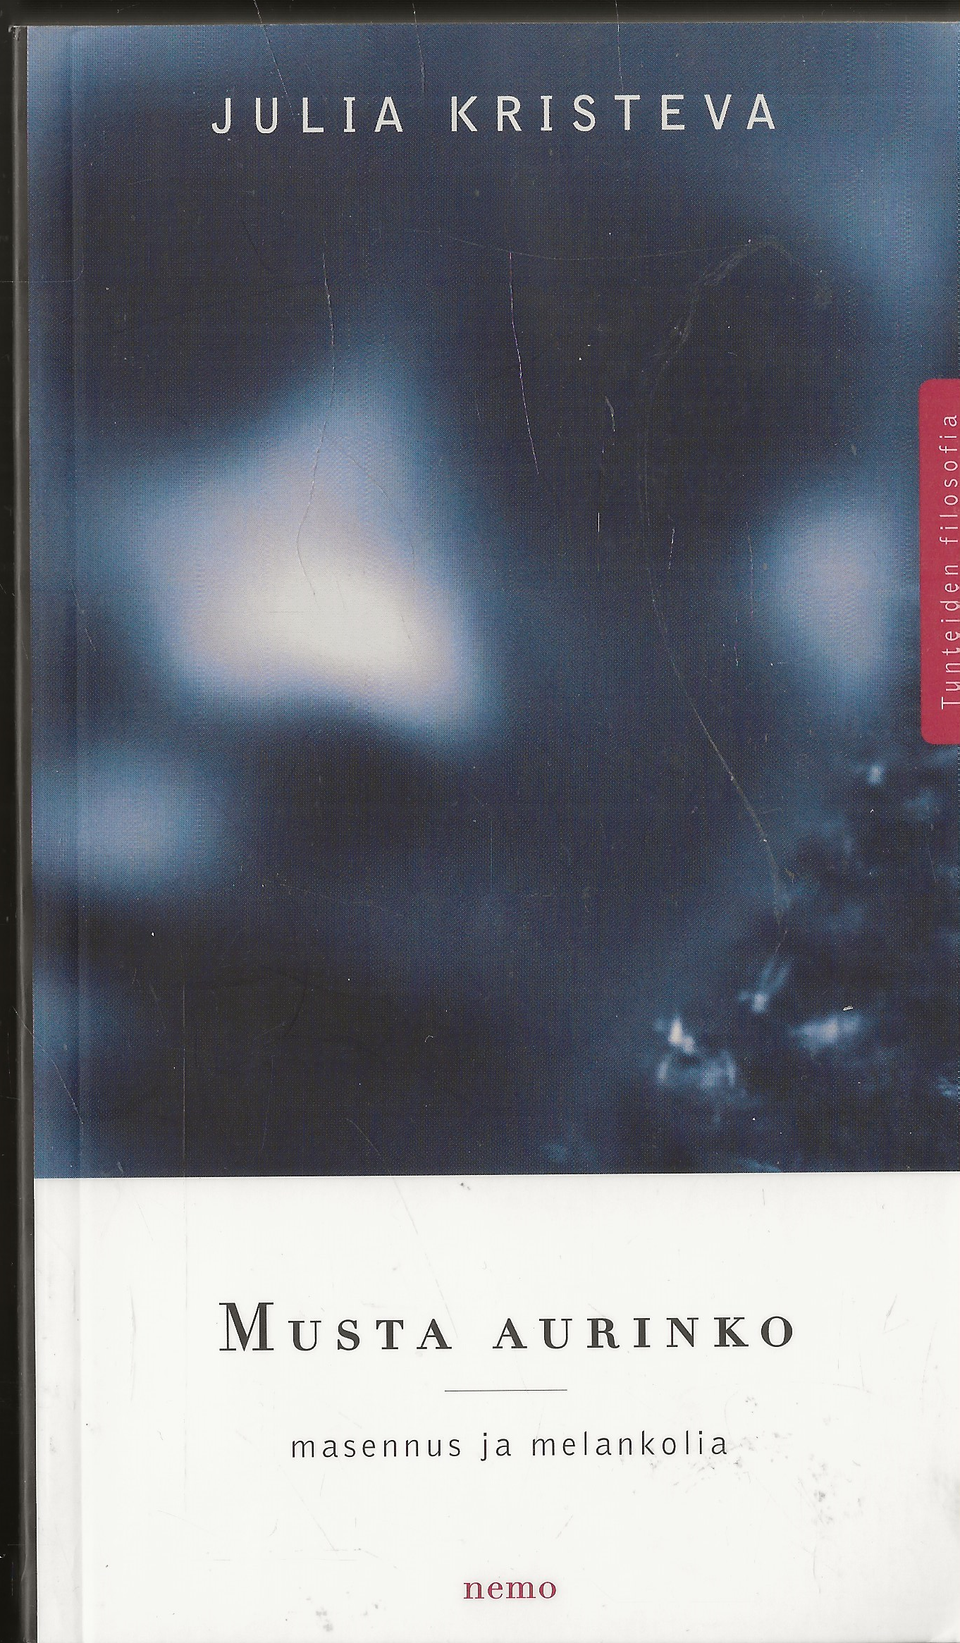 Julia Kristeva: Musta aurinko. nemo 1998